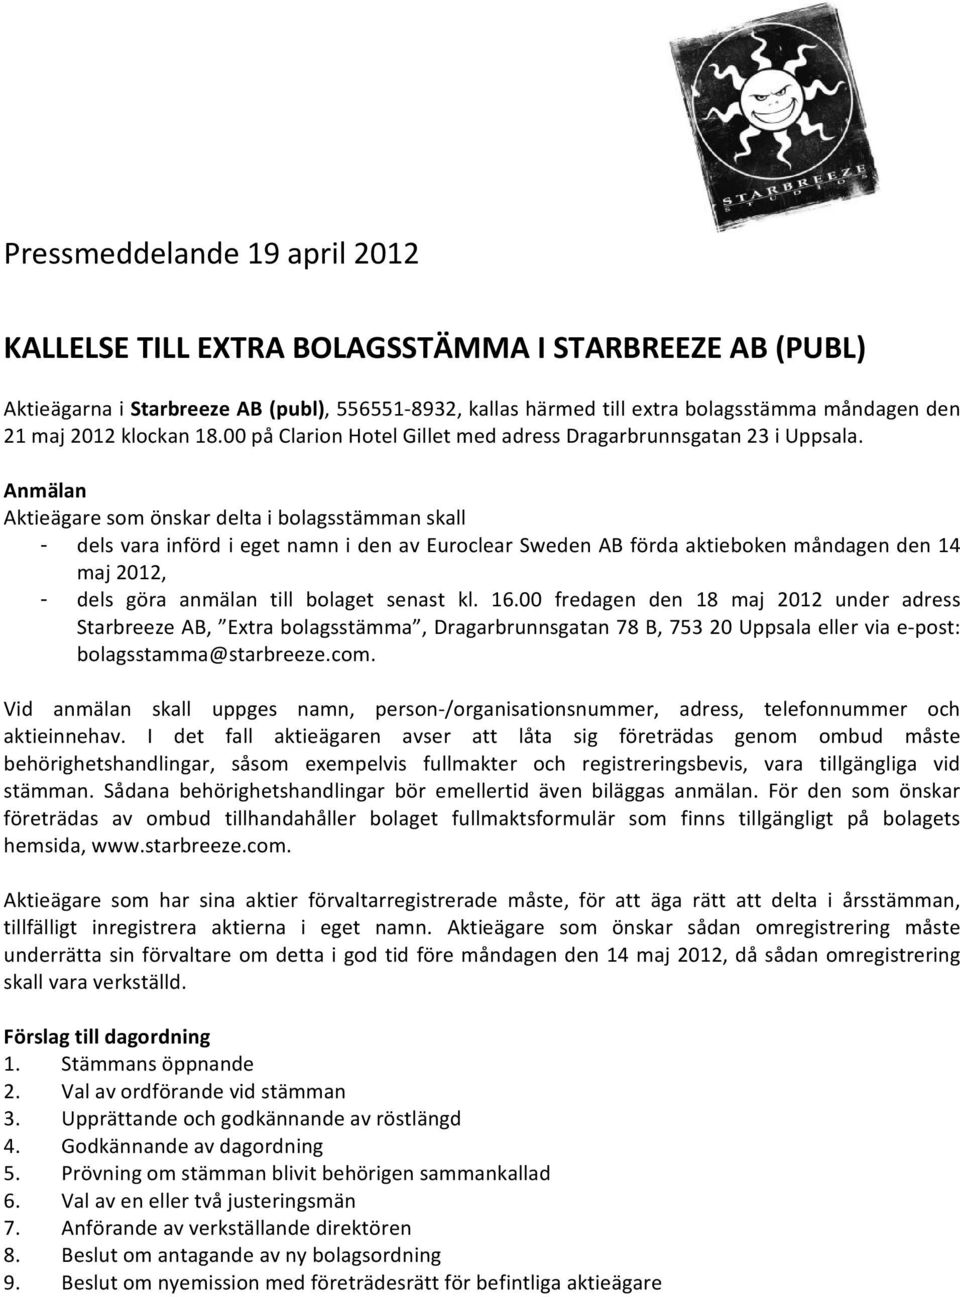 Anmälan Aktieägare som önskar delta i bolagsstämman skall - dels vara införd i eget namn i den av Euroclear Sweden AB förda aktieboken måndagen den 14 maj 2012, - dels göra anmälan till bolaget